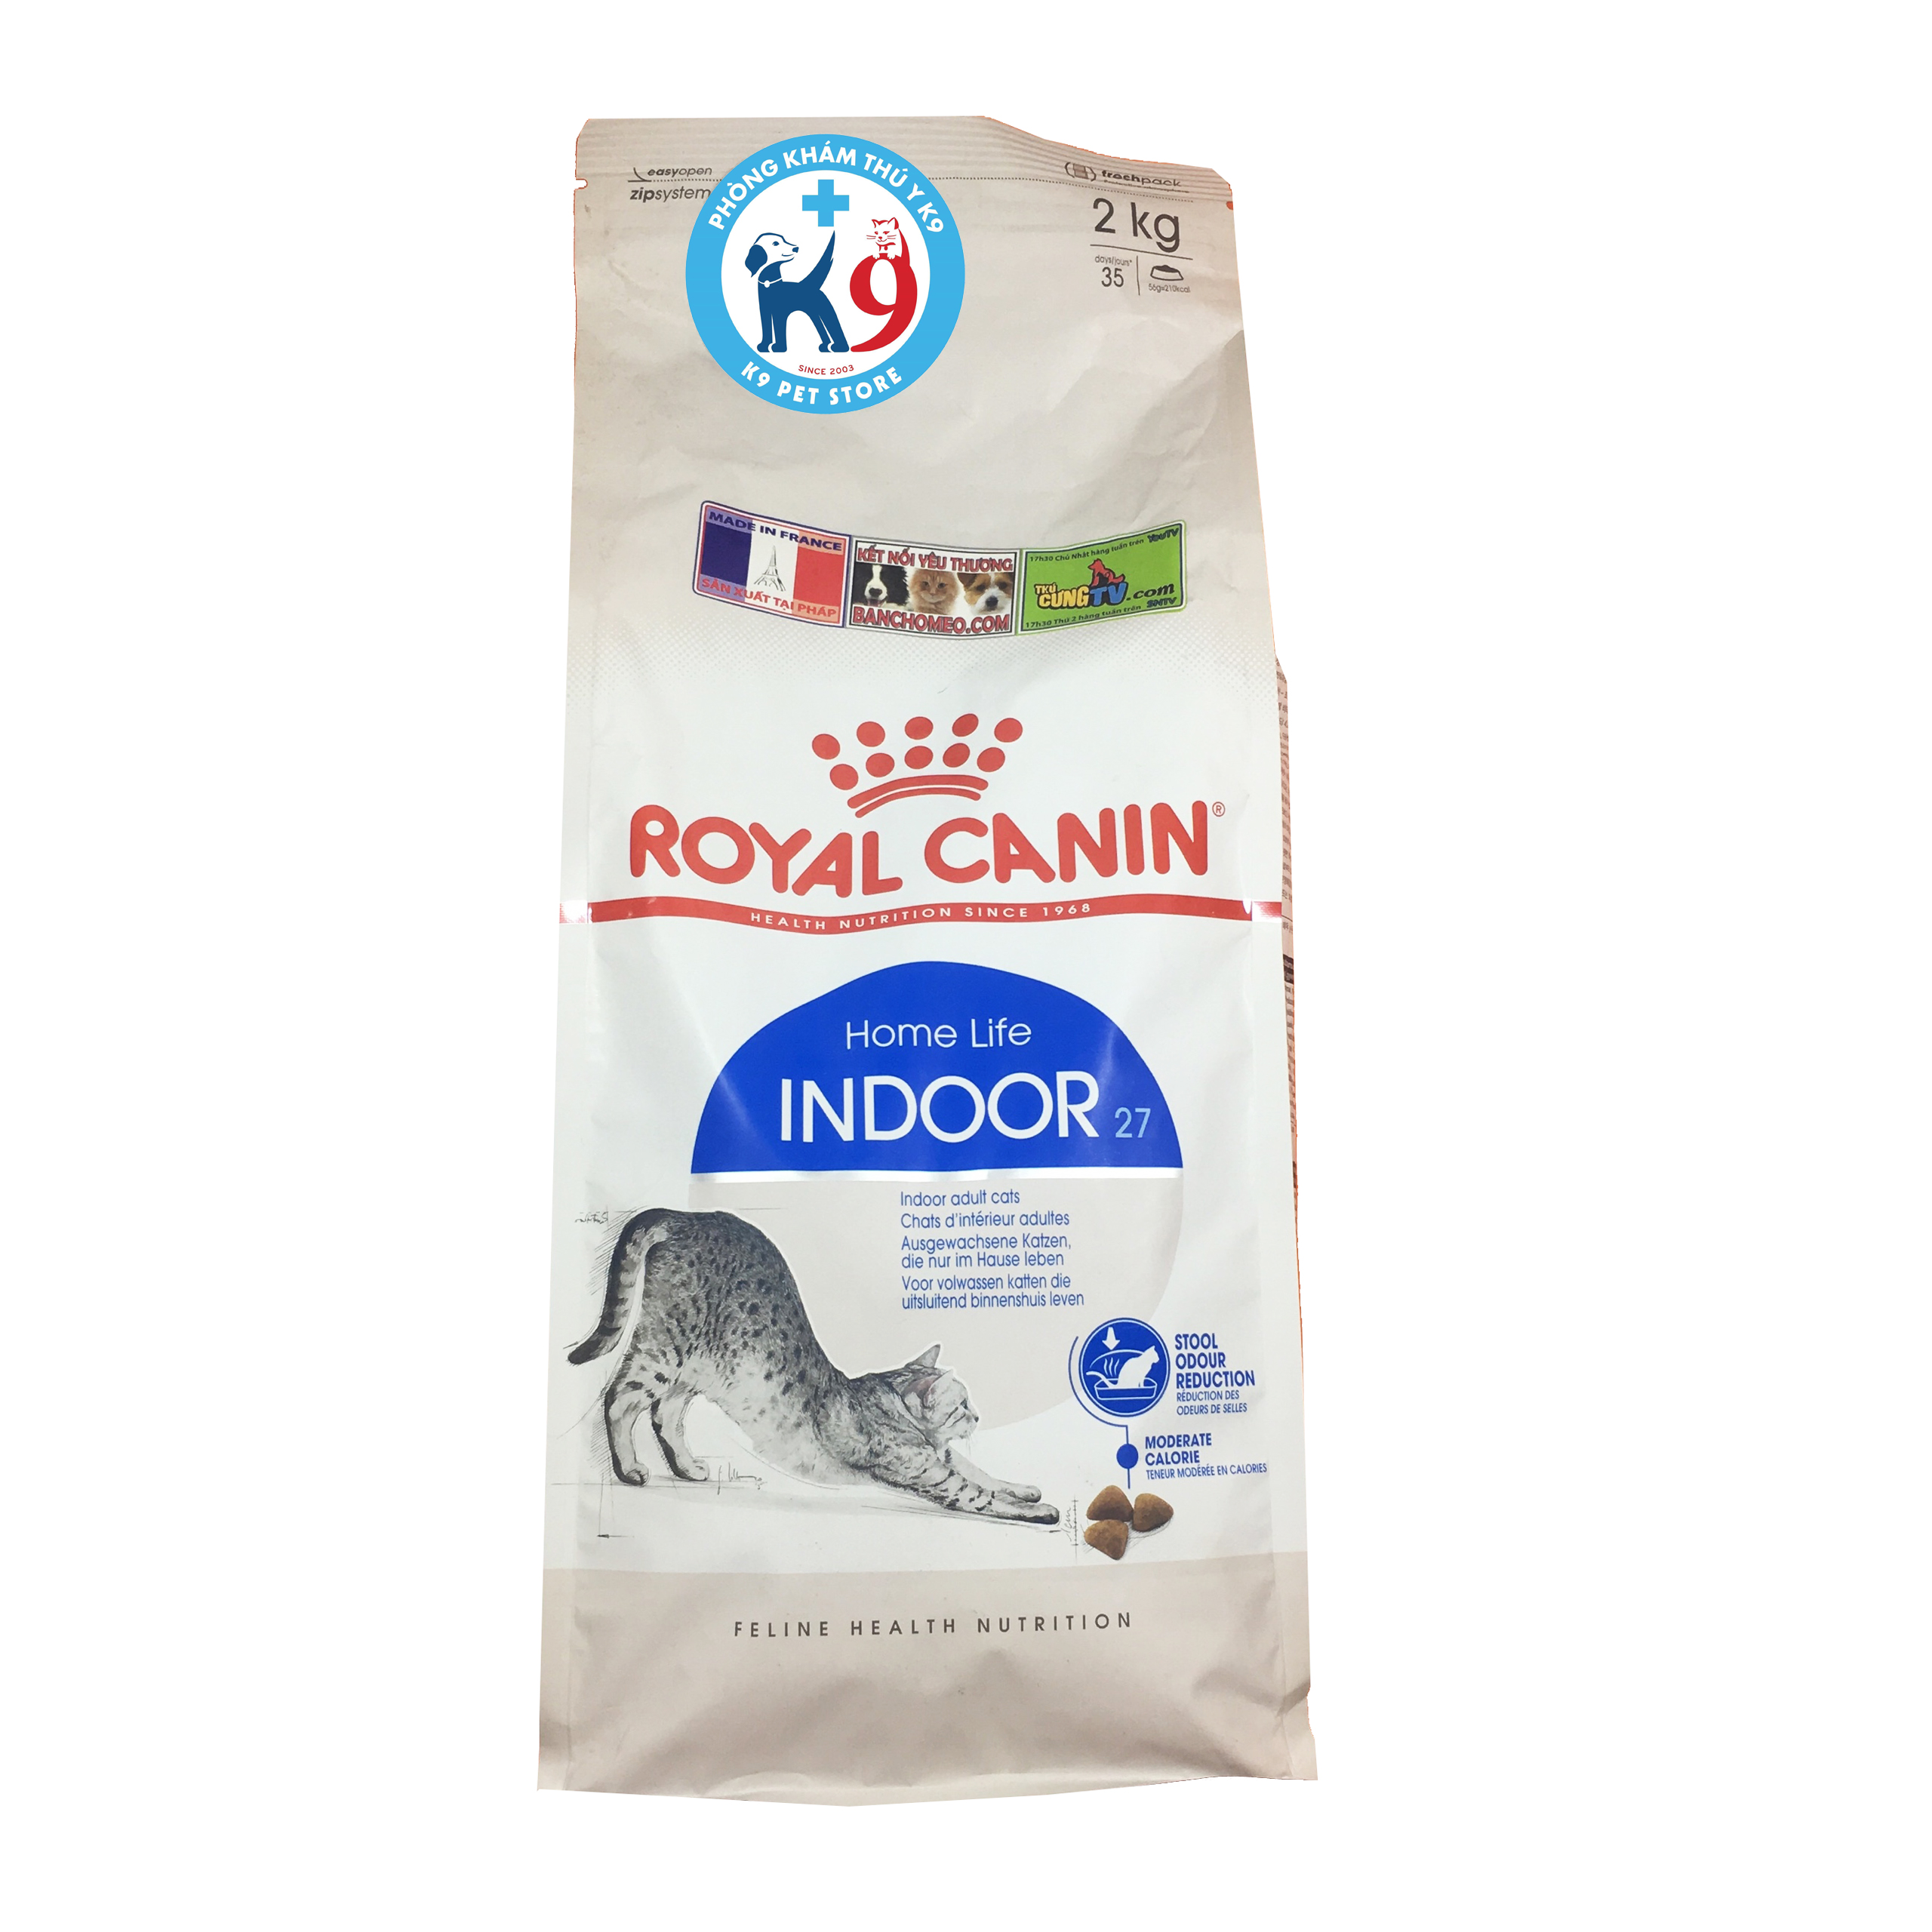 Royal Canin Indoor 27 - Thức ăn khô cho mèo trong nhà 2kg